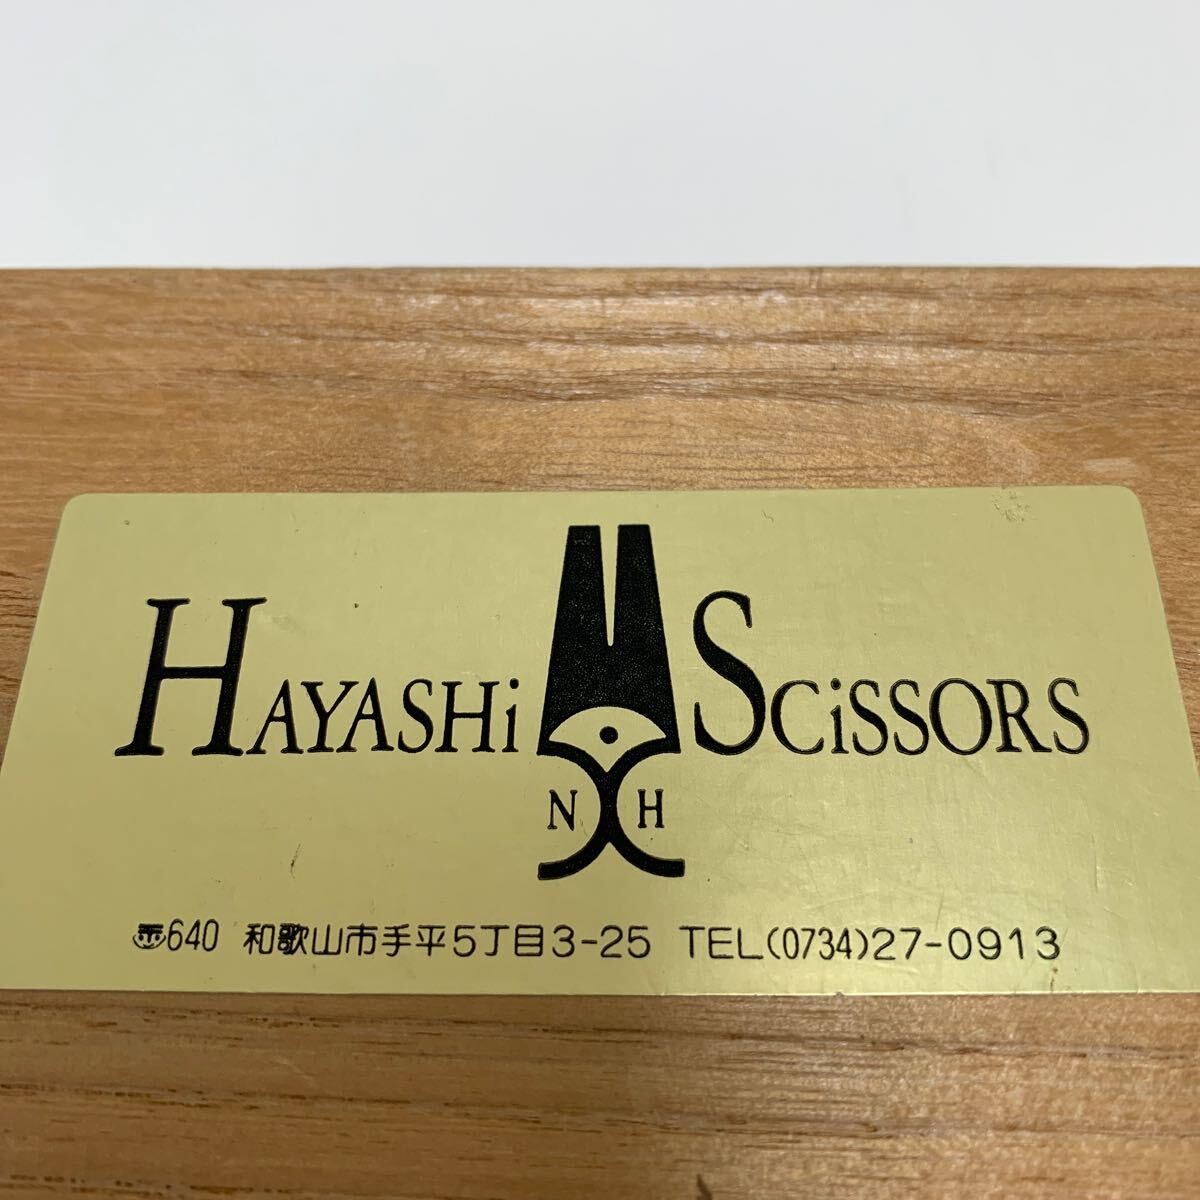 2) 美容師シザー HAYASHI SCISSORS ハヤシシザー はさみ 鋏 ※小さな刃こぼれありの画像10